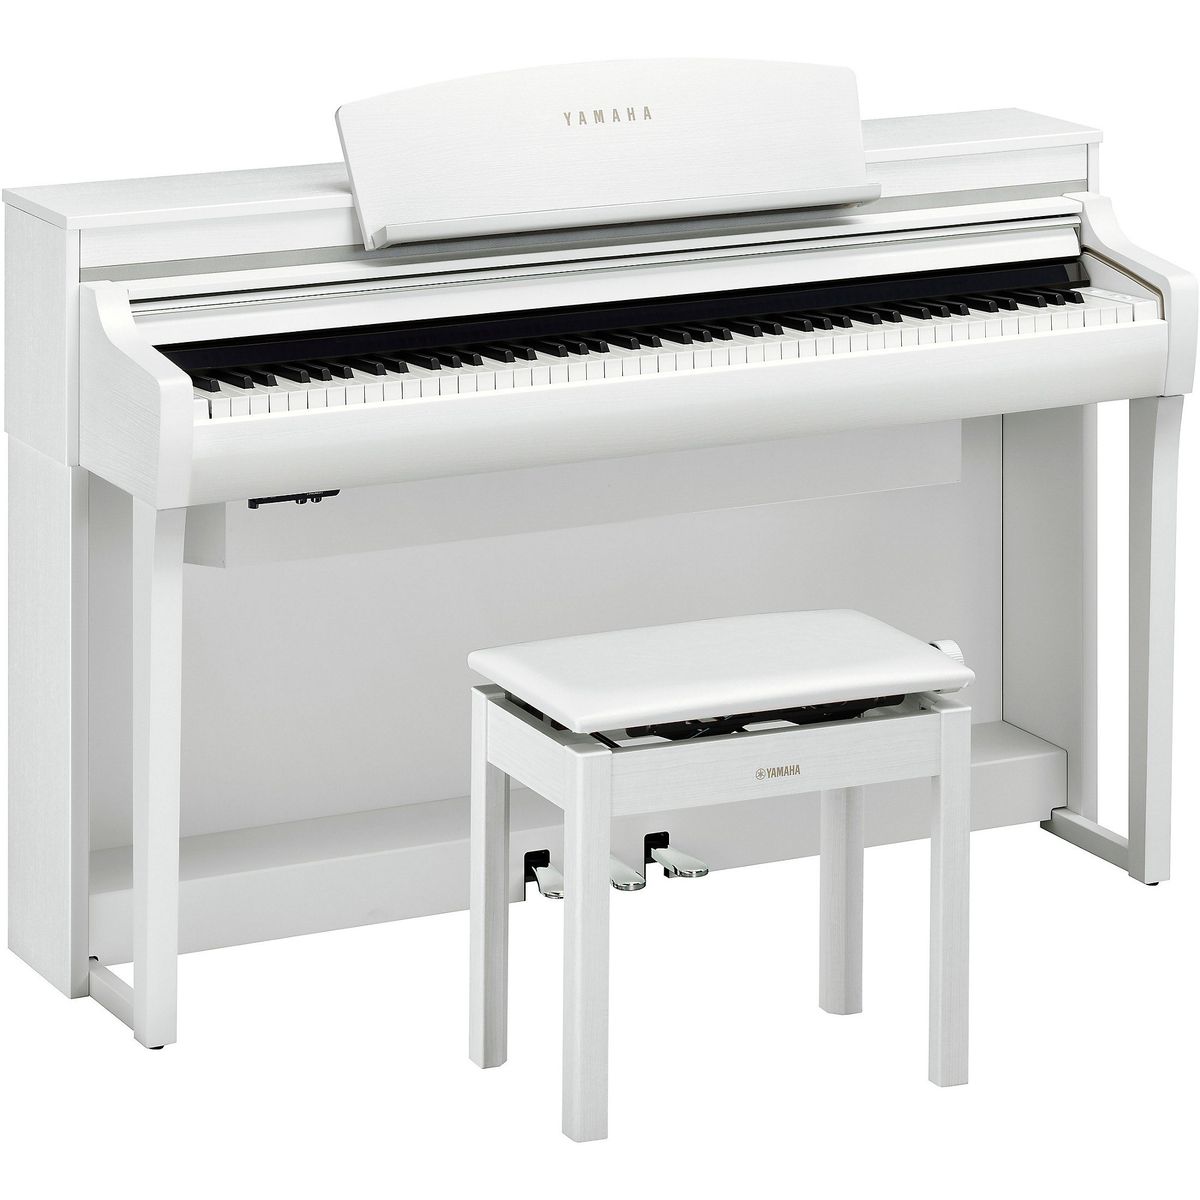 Цифровые пианино Yamaha CSP-275WH гитарное электронное пианино с мини клавиатурой электронное пианино с 37 клавишами